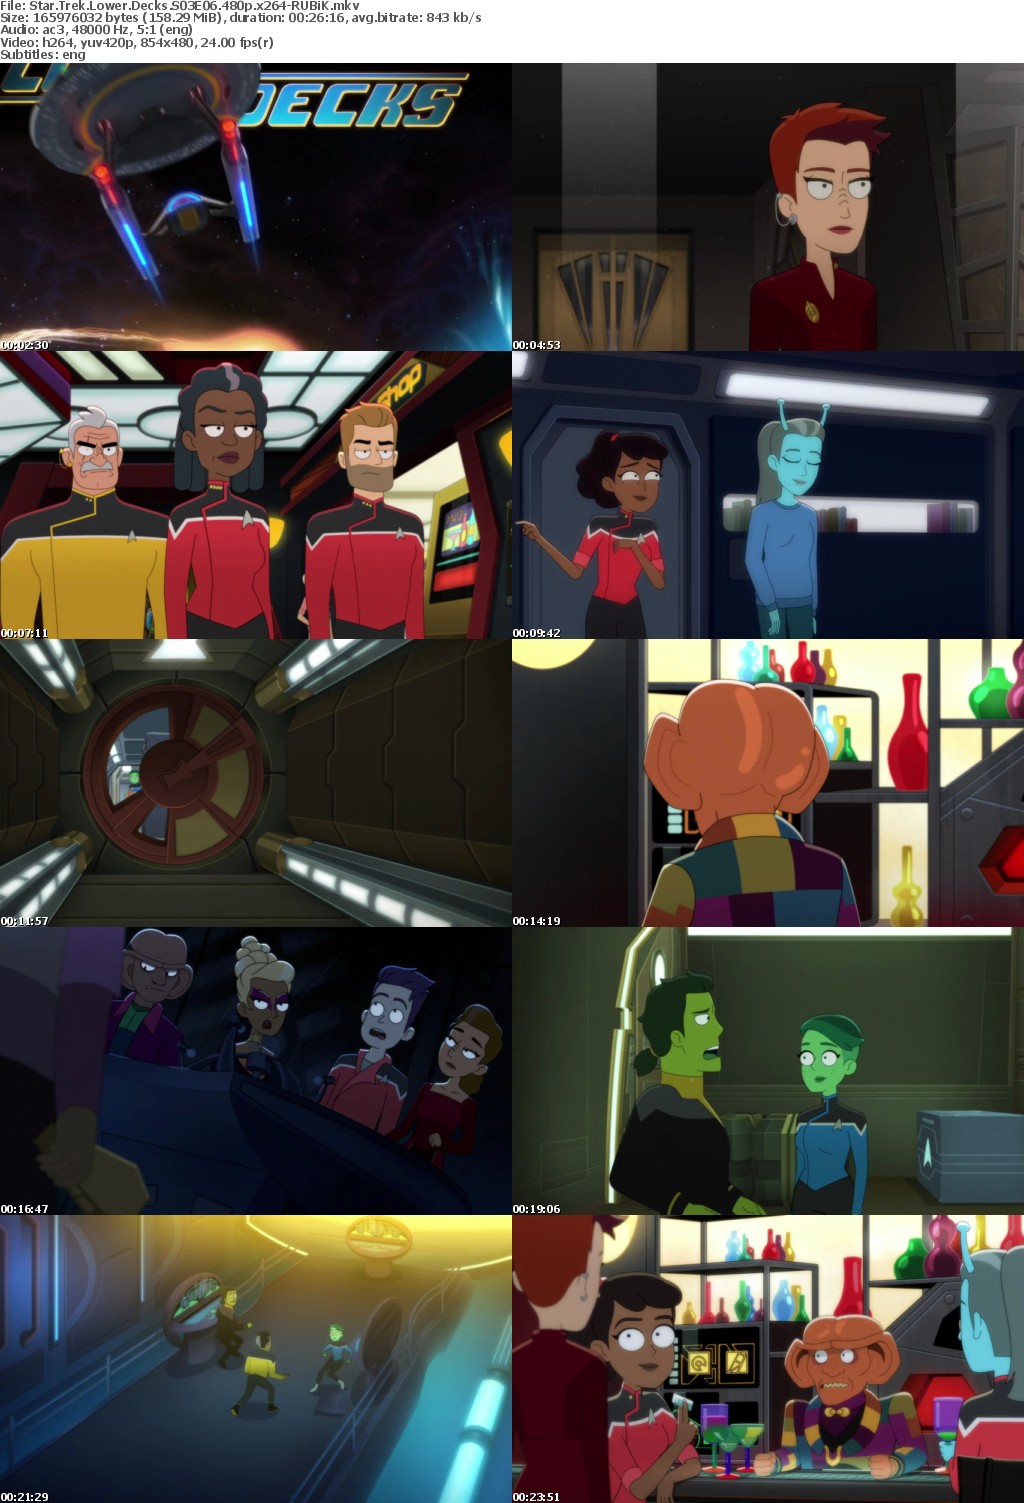 Star Trek Lower Decks S03E06 480p x264-RUBiK